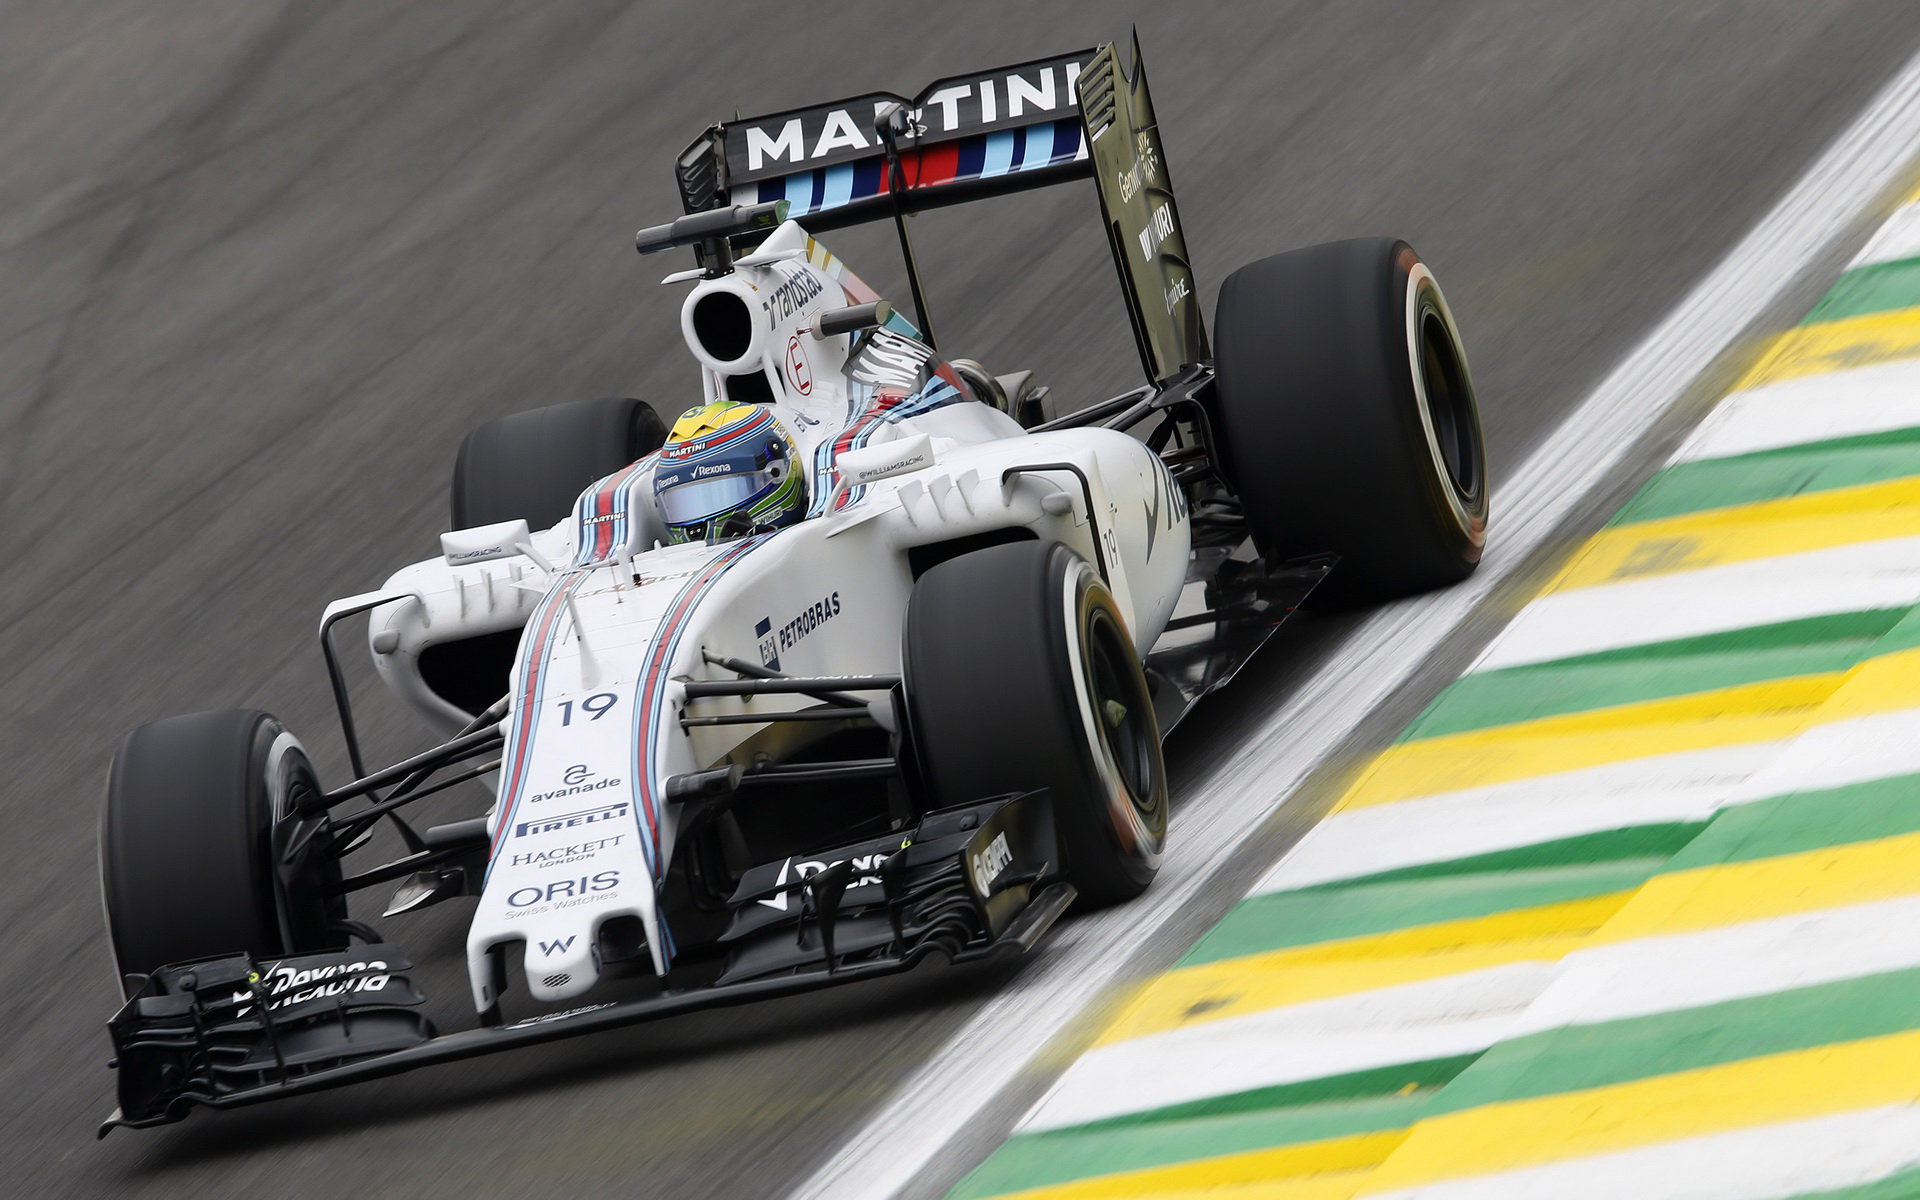 Felipe Massa v Brazílii